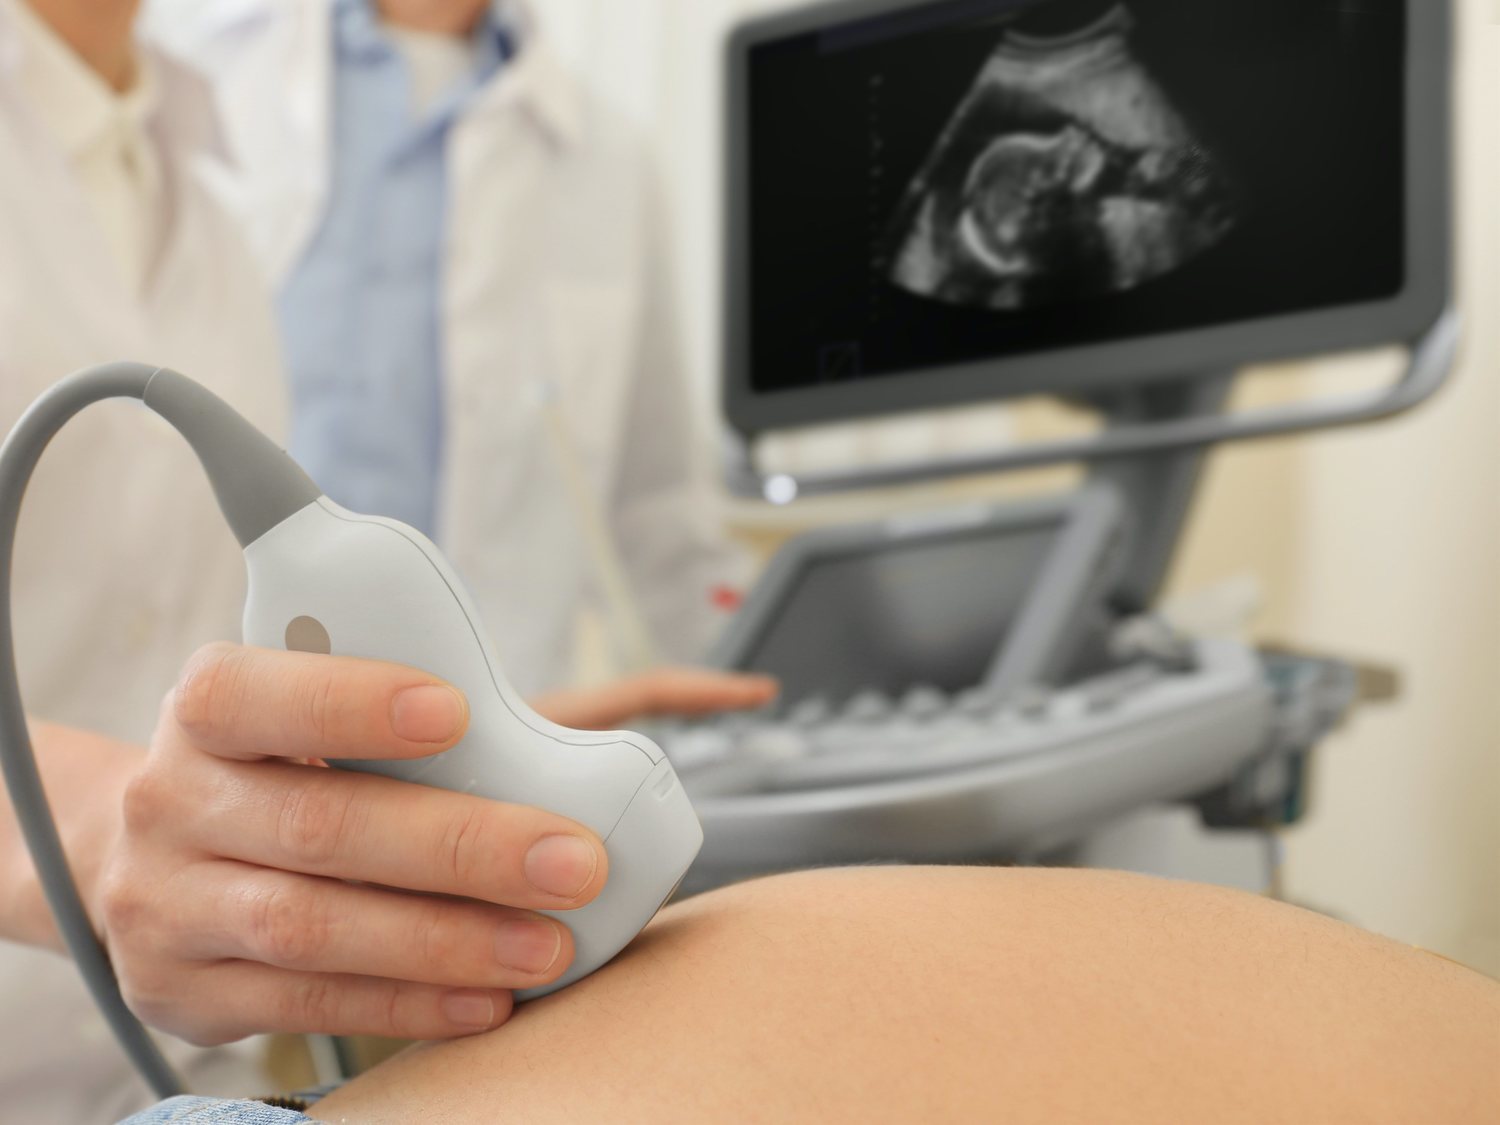 Eslovaquia obligará a las mujeres que quieran abortar a ver al feto antes de hacerlo